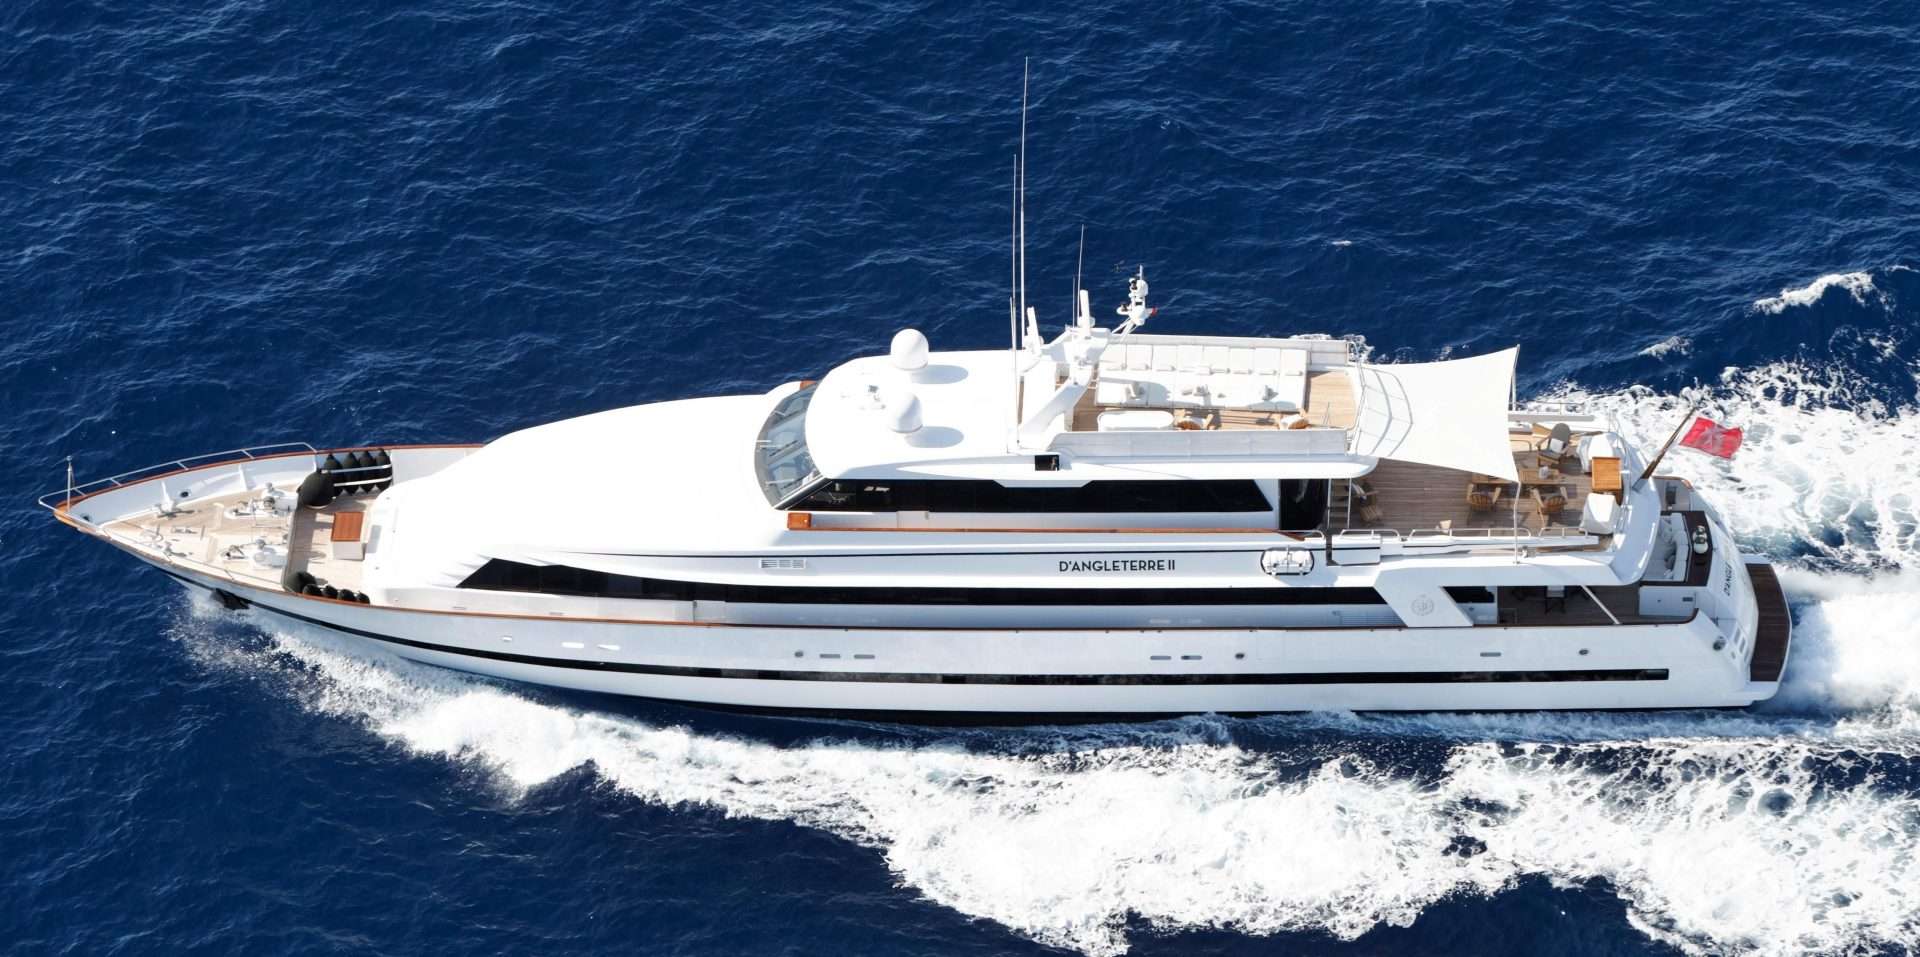 SEA LADY II - Yacht Charter San Sebastian de la Gomera & Boat hire in W. Med -Naples/Sicily, W. Med -Riviera/Cors/Sard., W. Med - Spain/Balearics 1